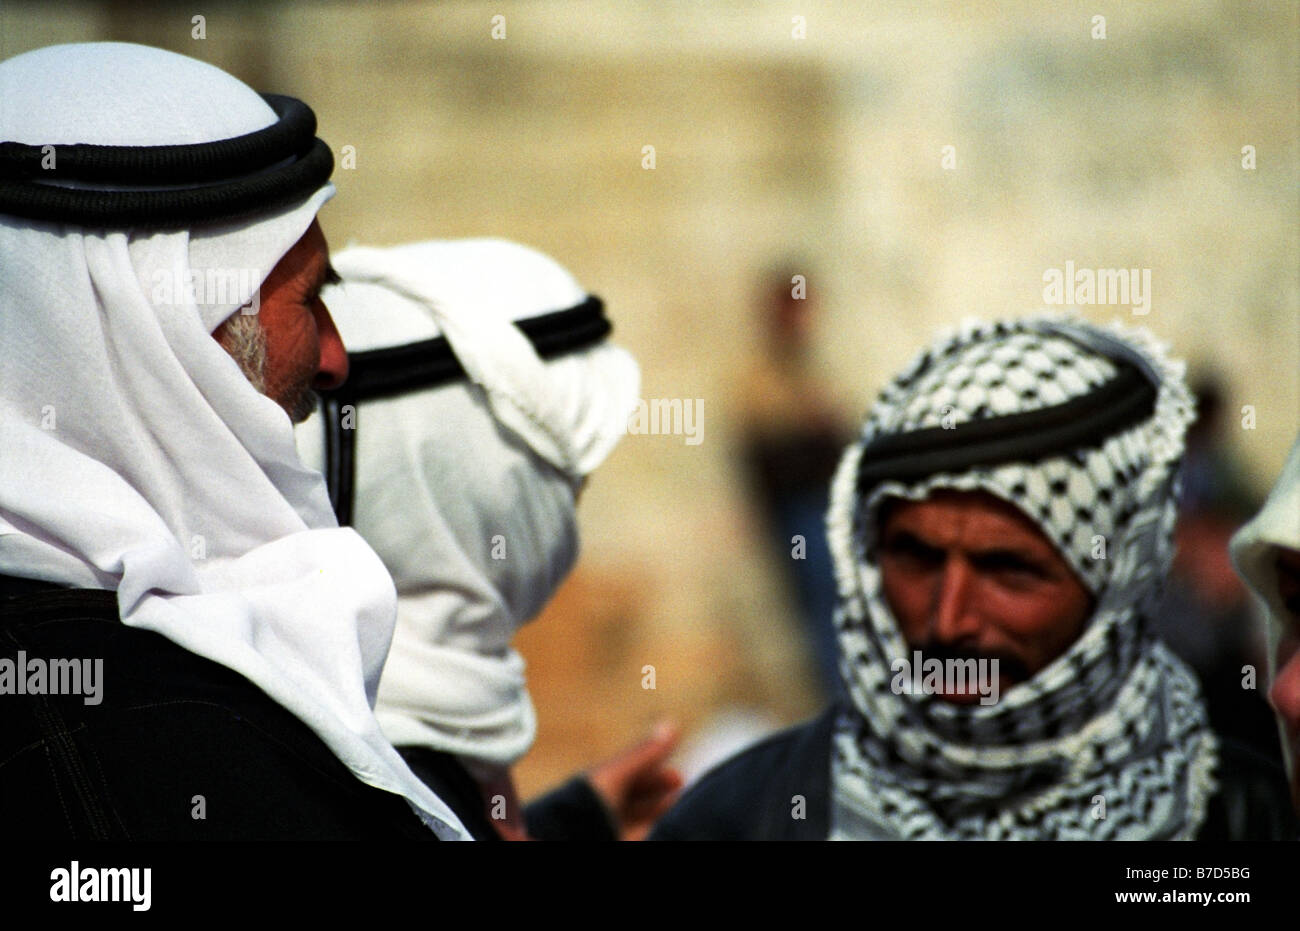 Arabische Männer tragen traditionelle Kafias - Kopfbedeckung. Stockfoto